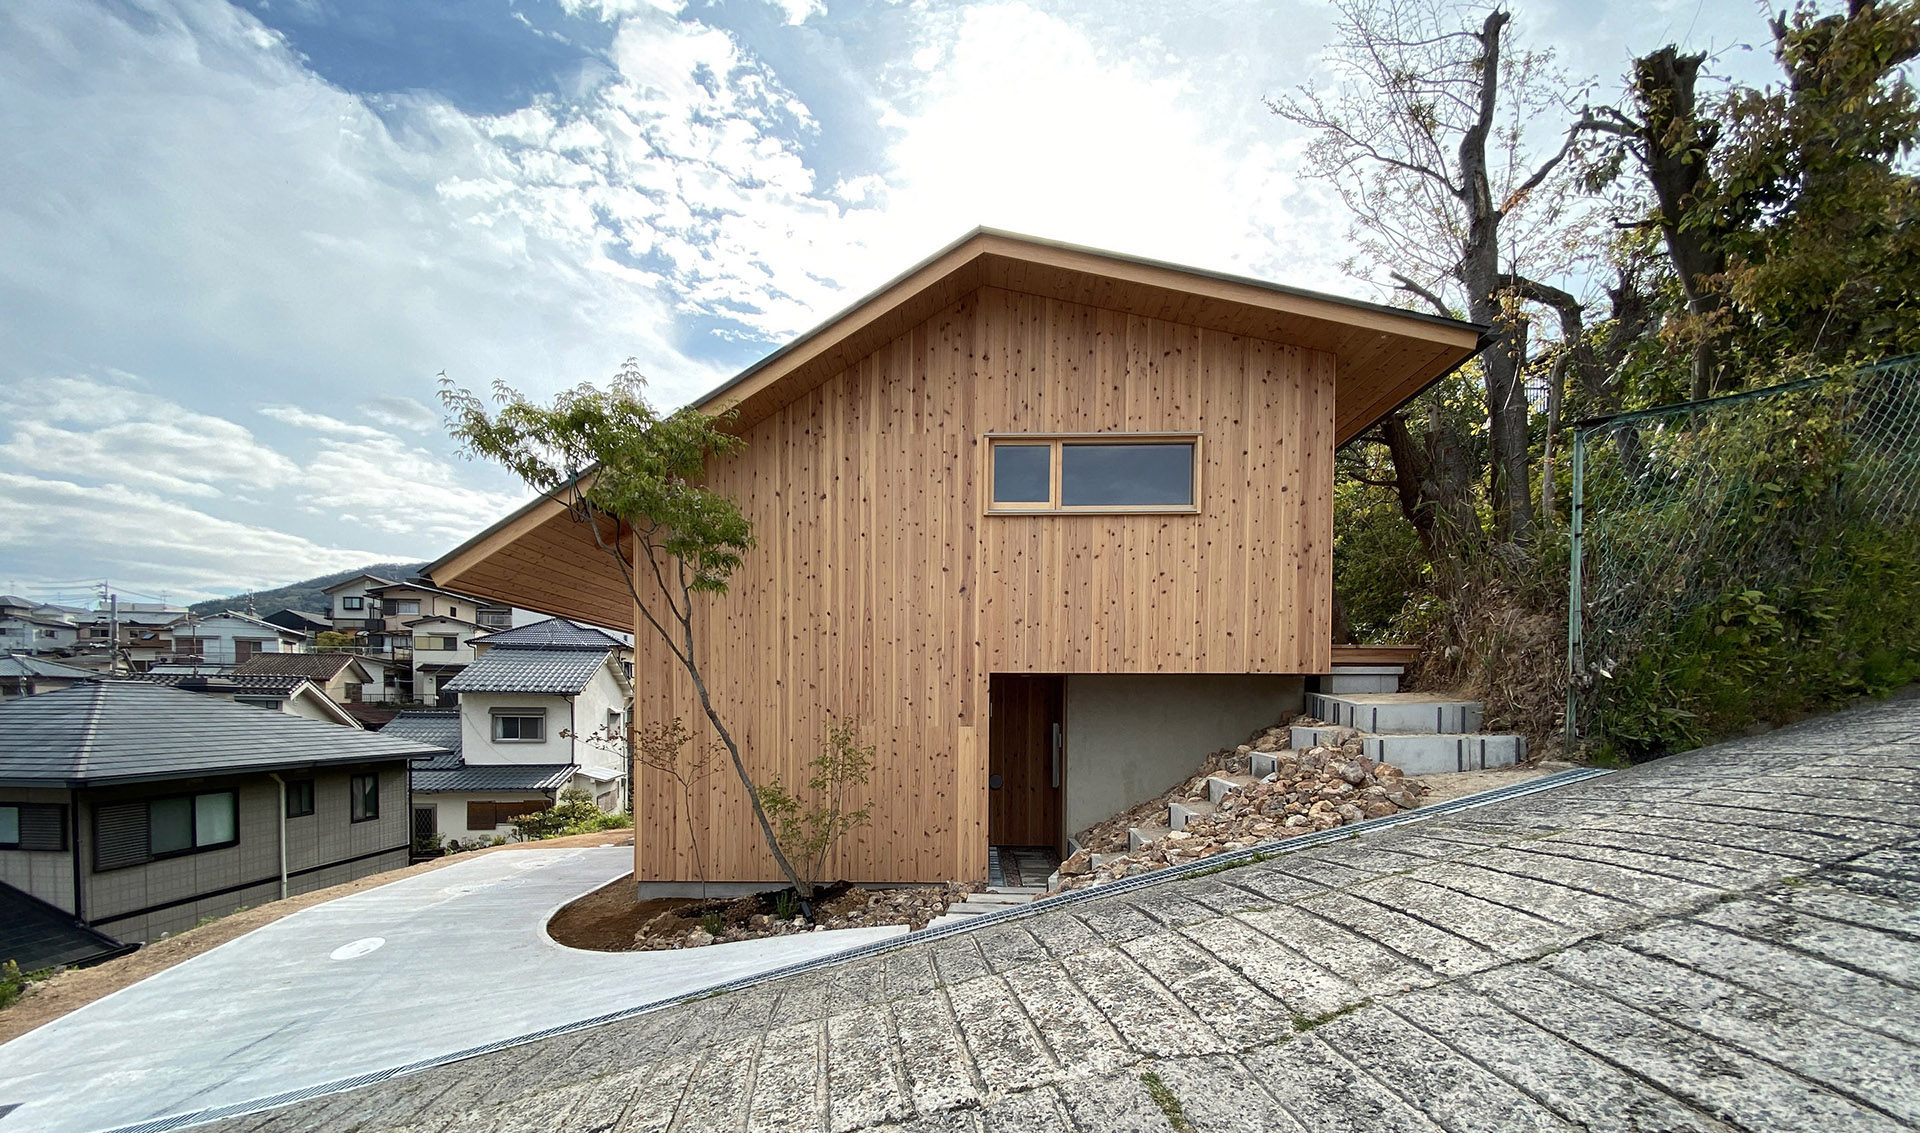 Casa de dos pisos con terraza de madera. Espacio inmerso en el centro de  una pequeña colina - timberonweb - arkitectureonweb